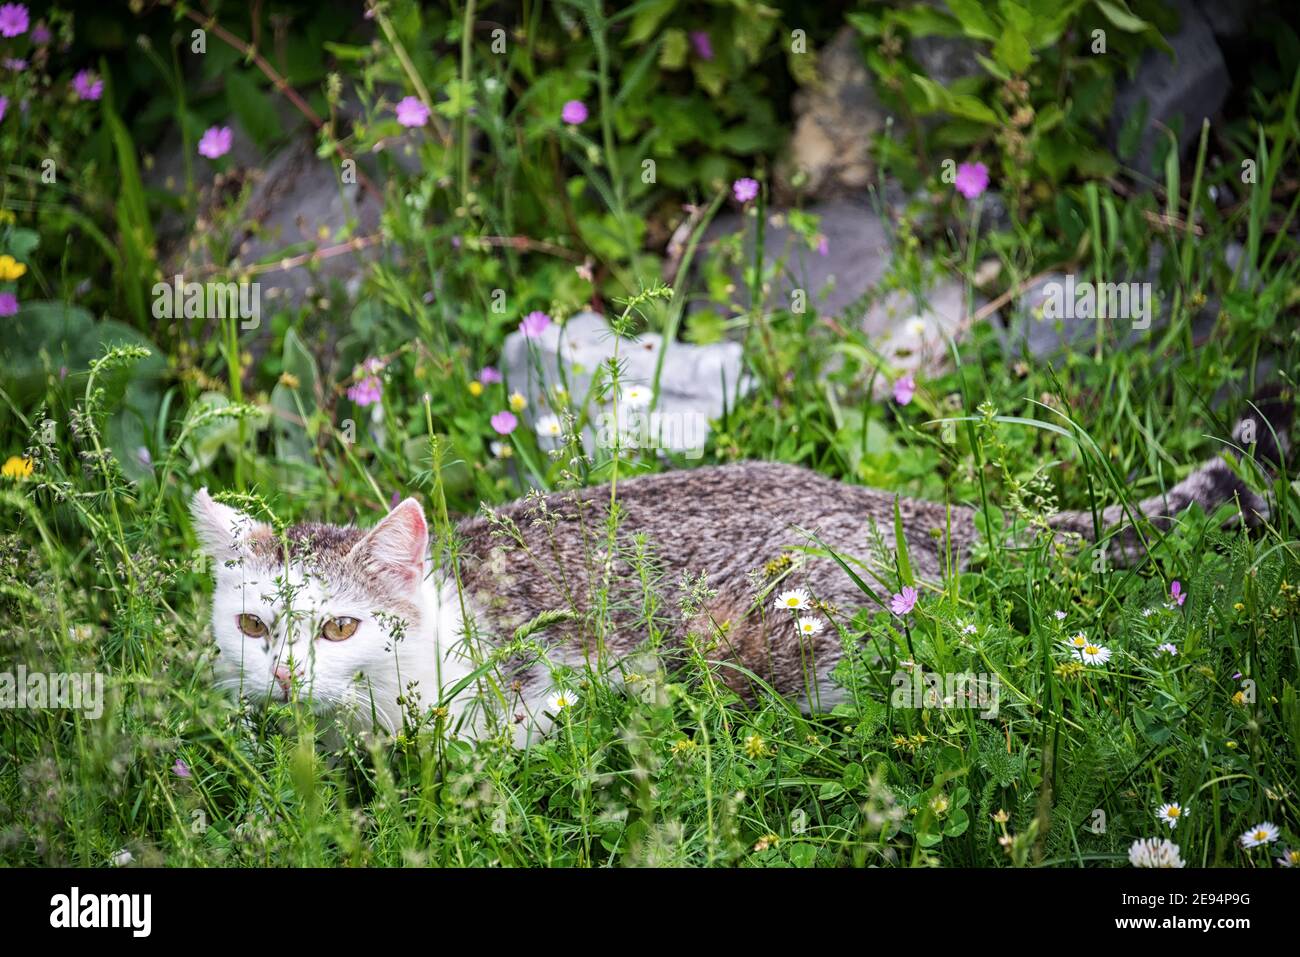 Niedliche Cate in saftig grünen Gras mit bunten Wildblumen Stockfoto